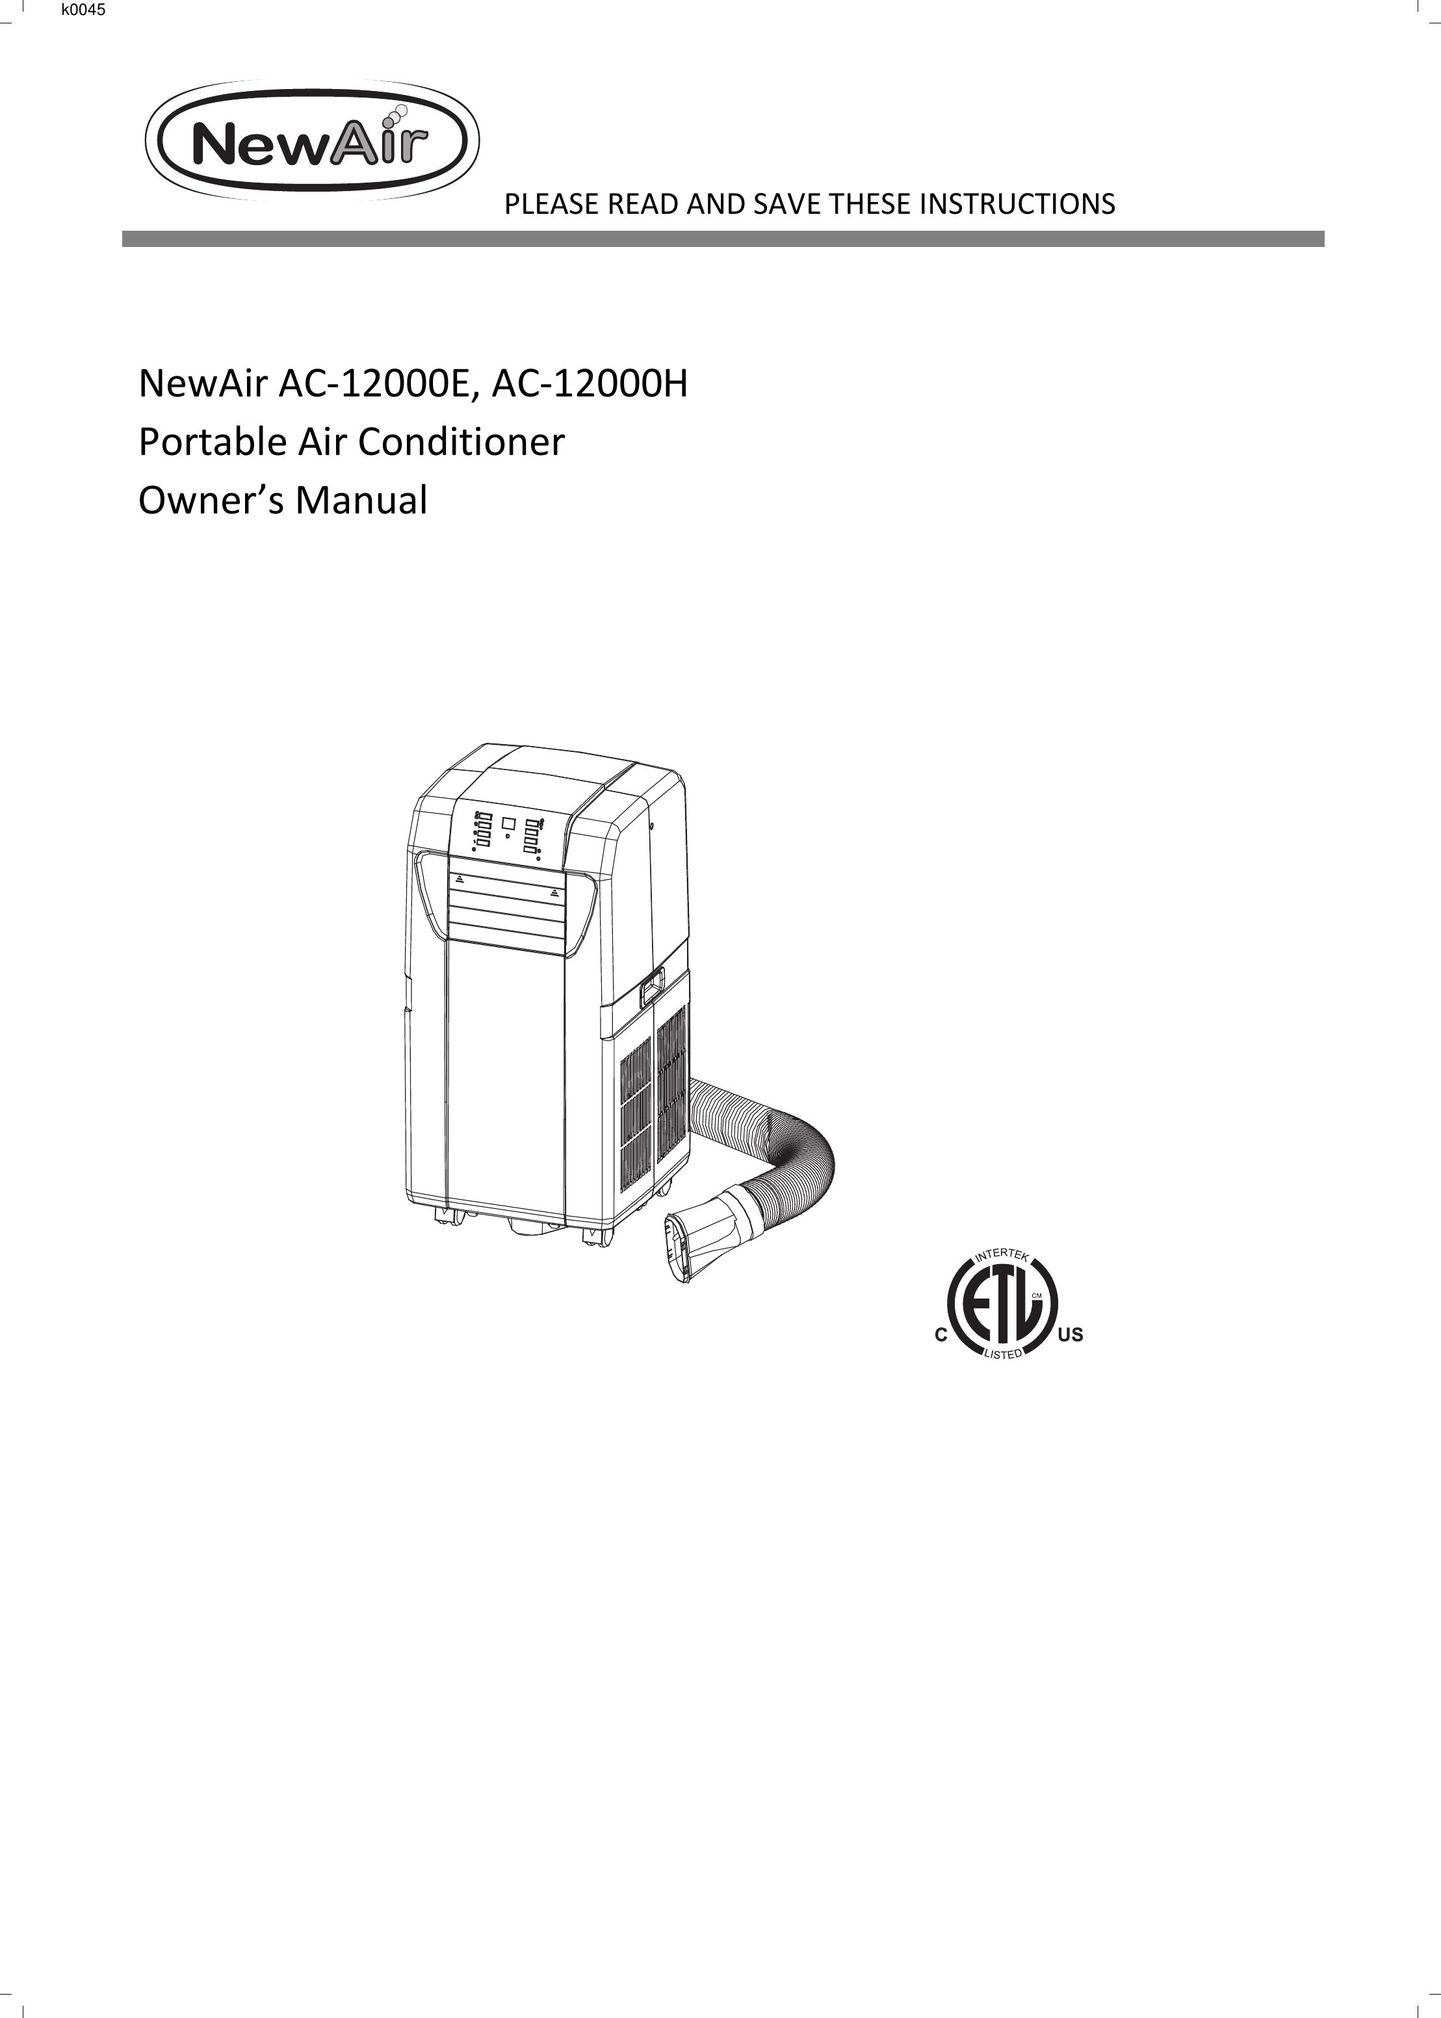 NewAir AC 12000E Air Conditioner User Manual